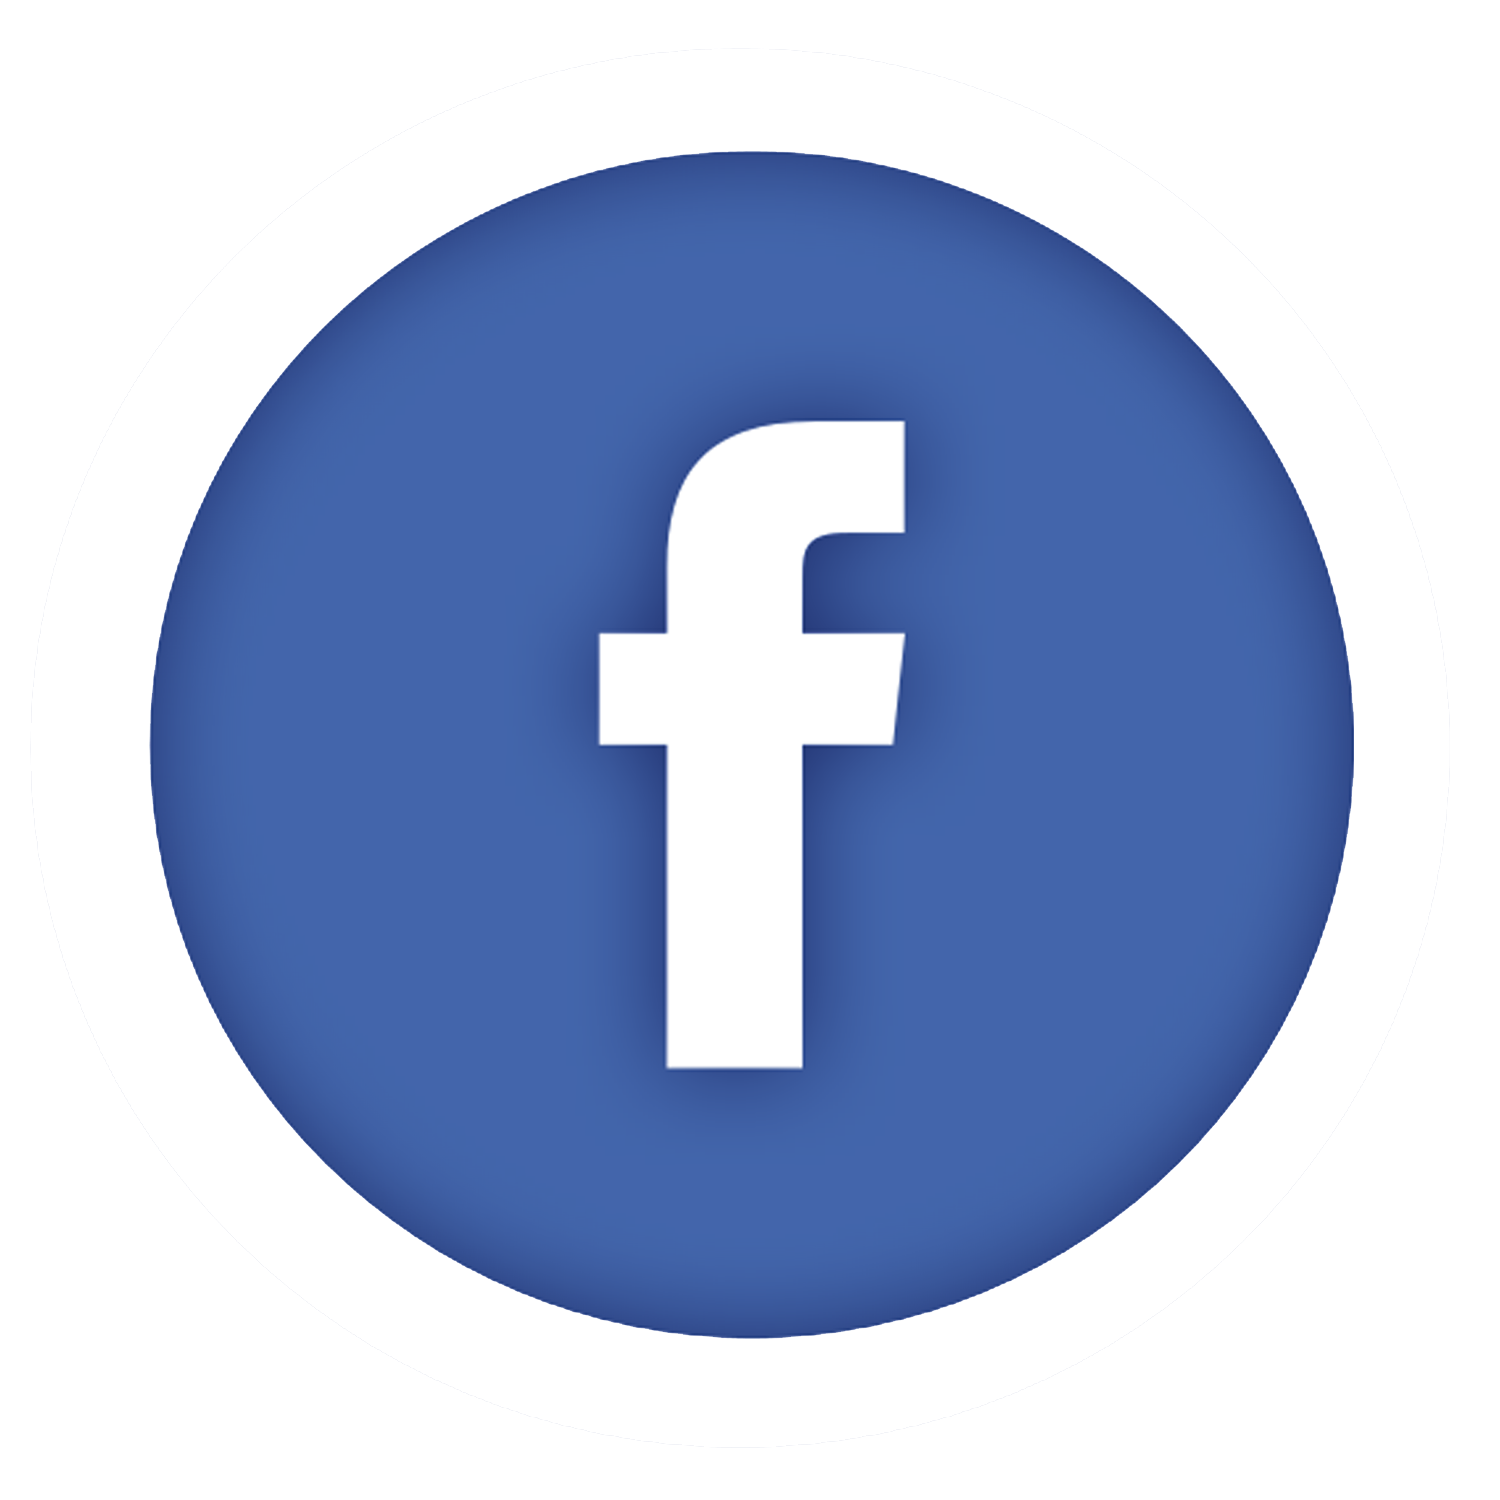 7+ Koleksi Logo Facebook Mentahan Lengkap Format PNG, Jpg, Vector